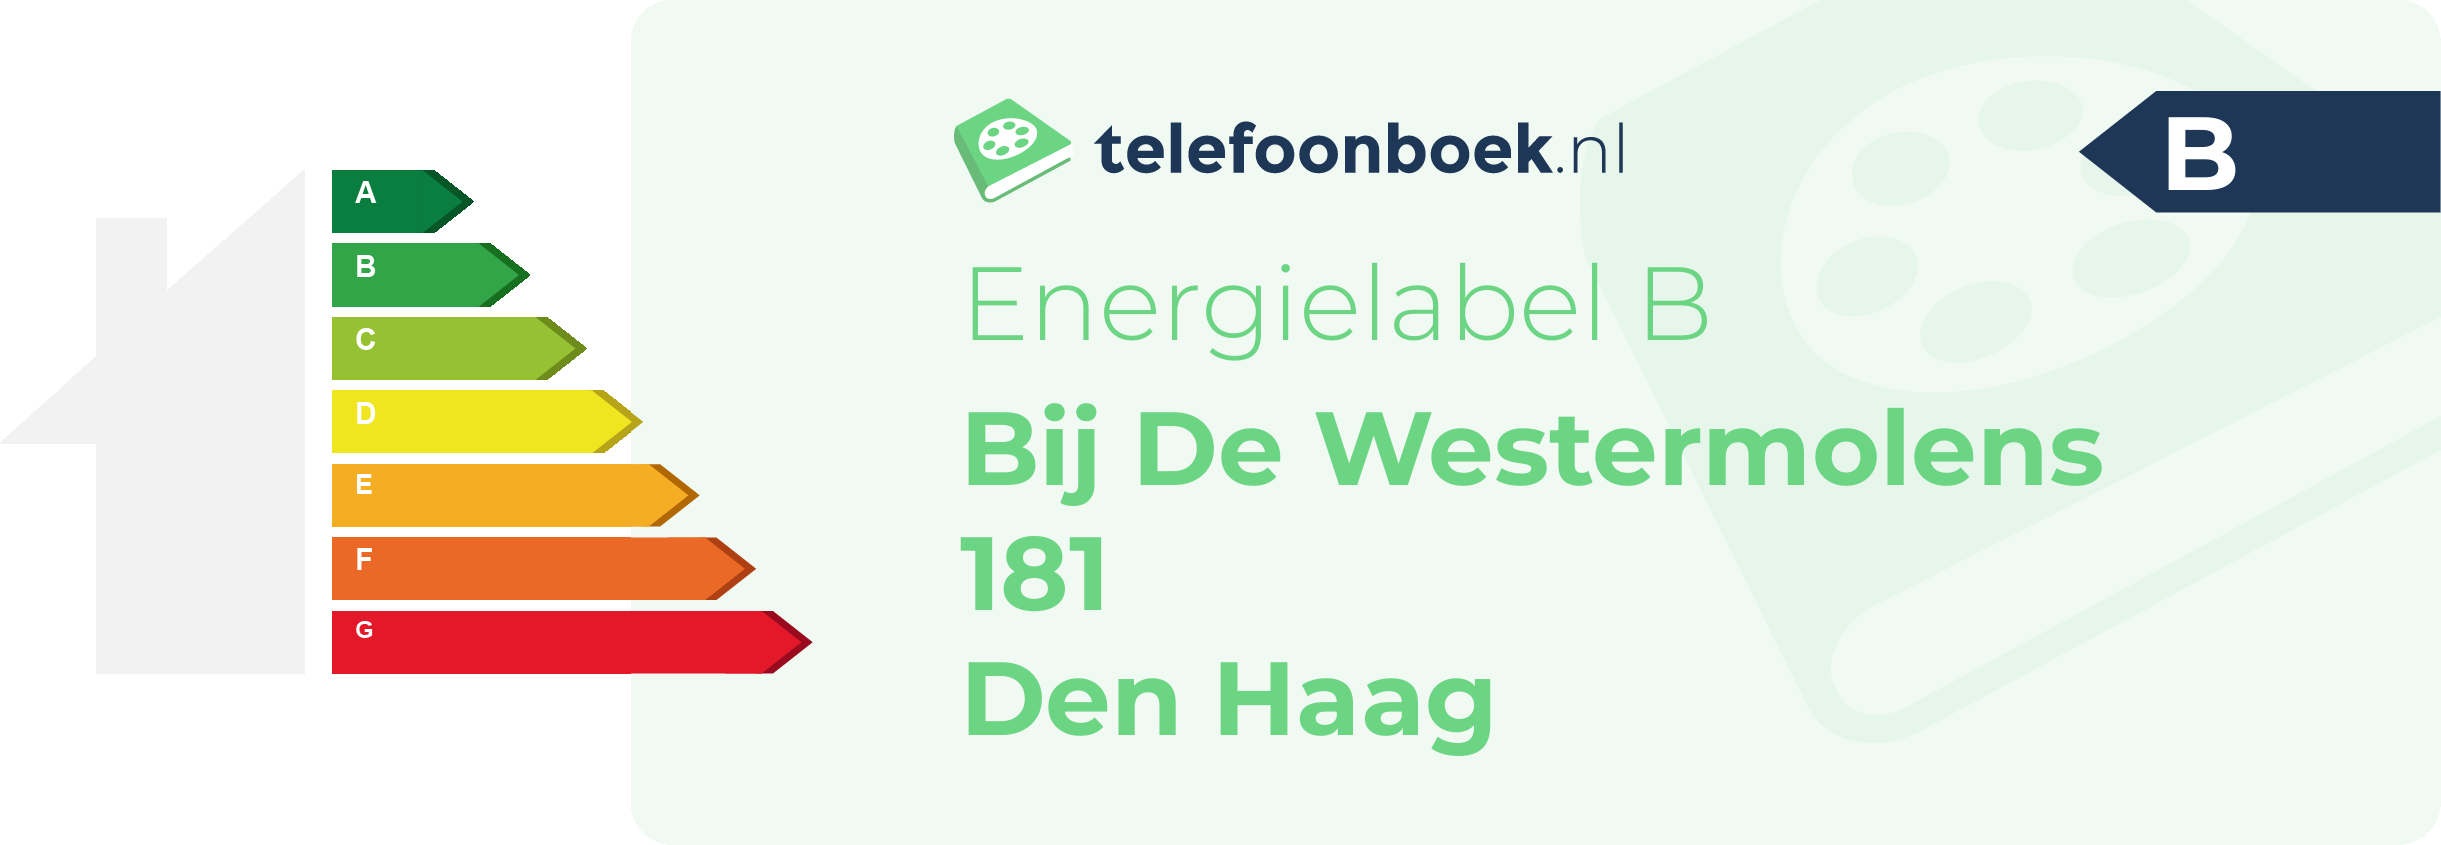 Energielabel Bij De Westermolens 181 Den Haag